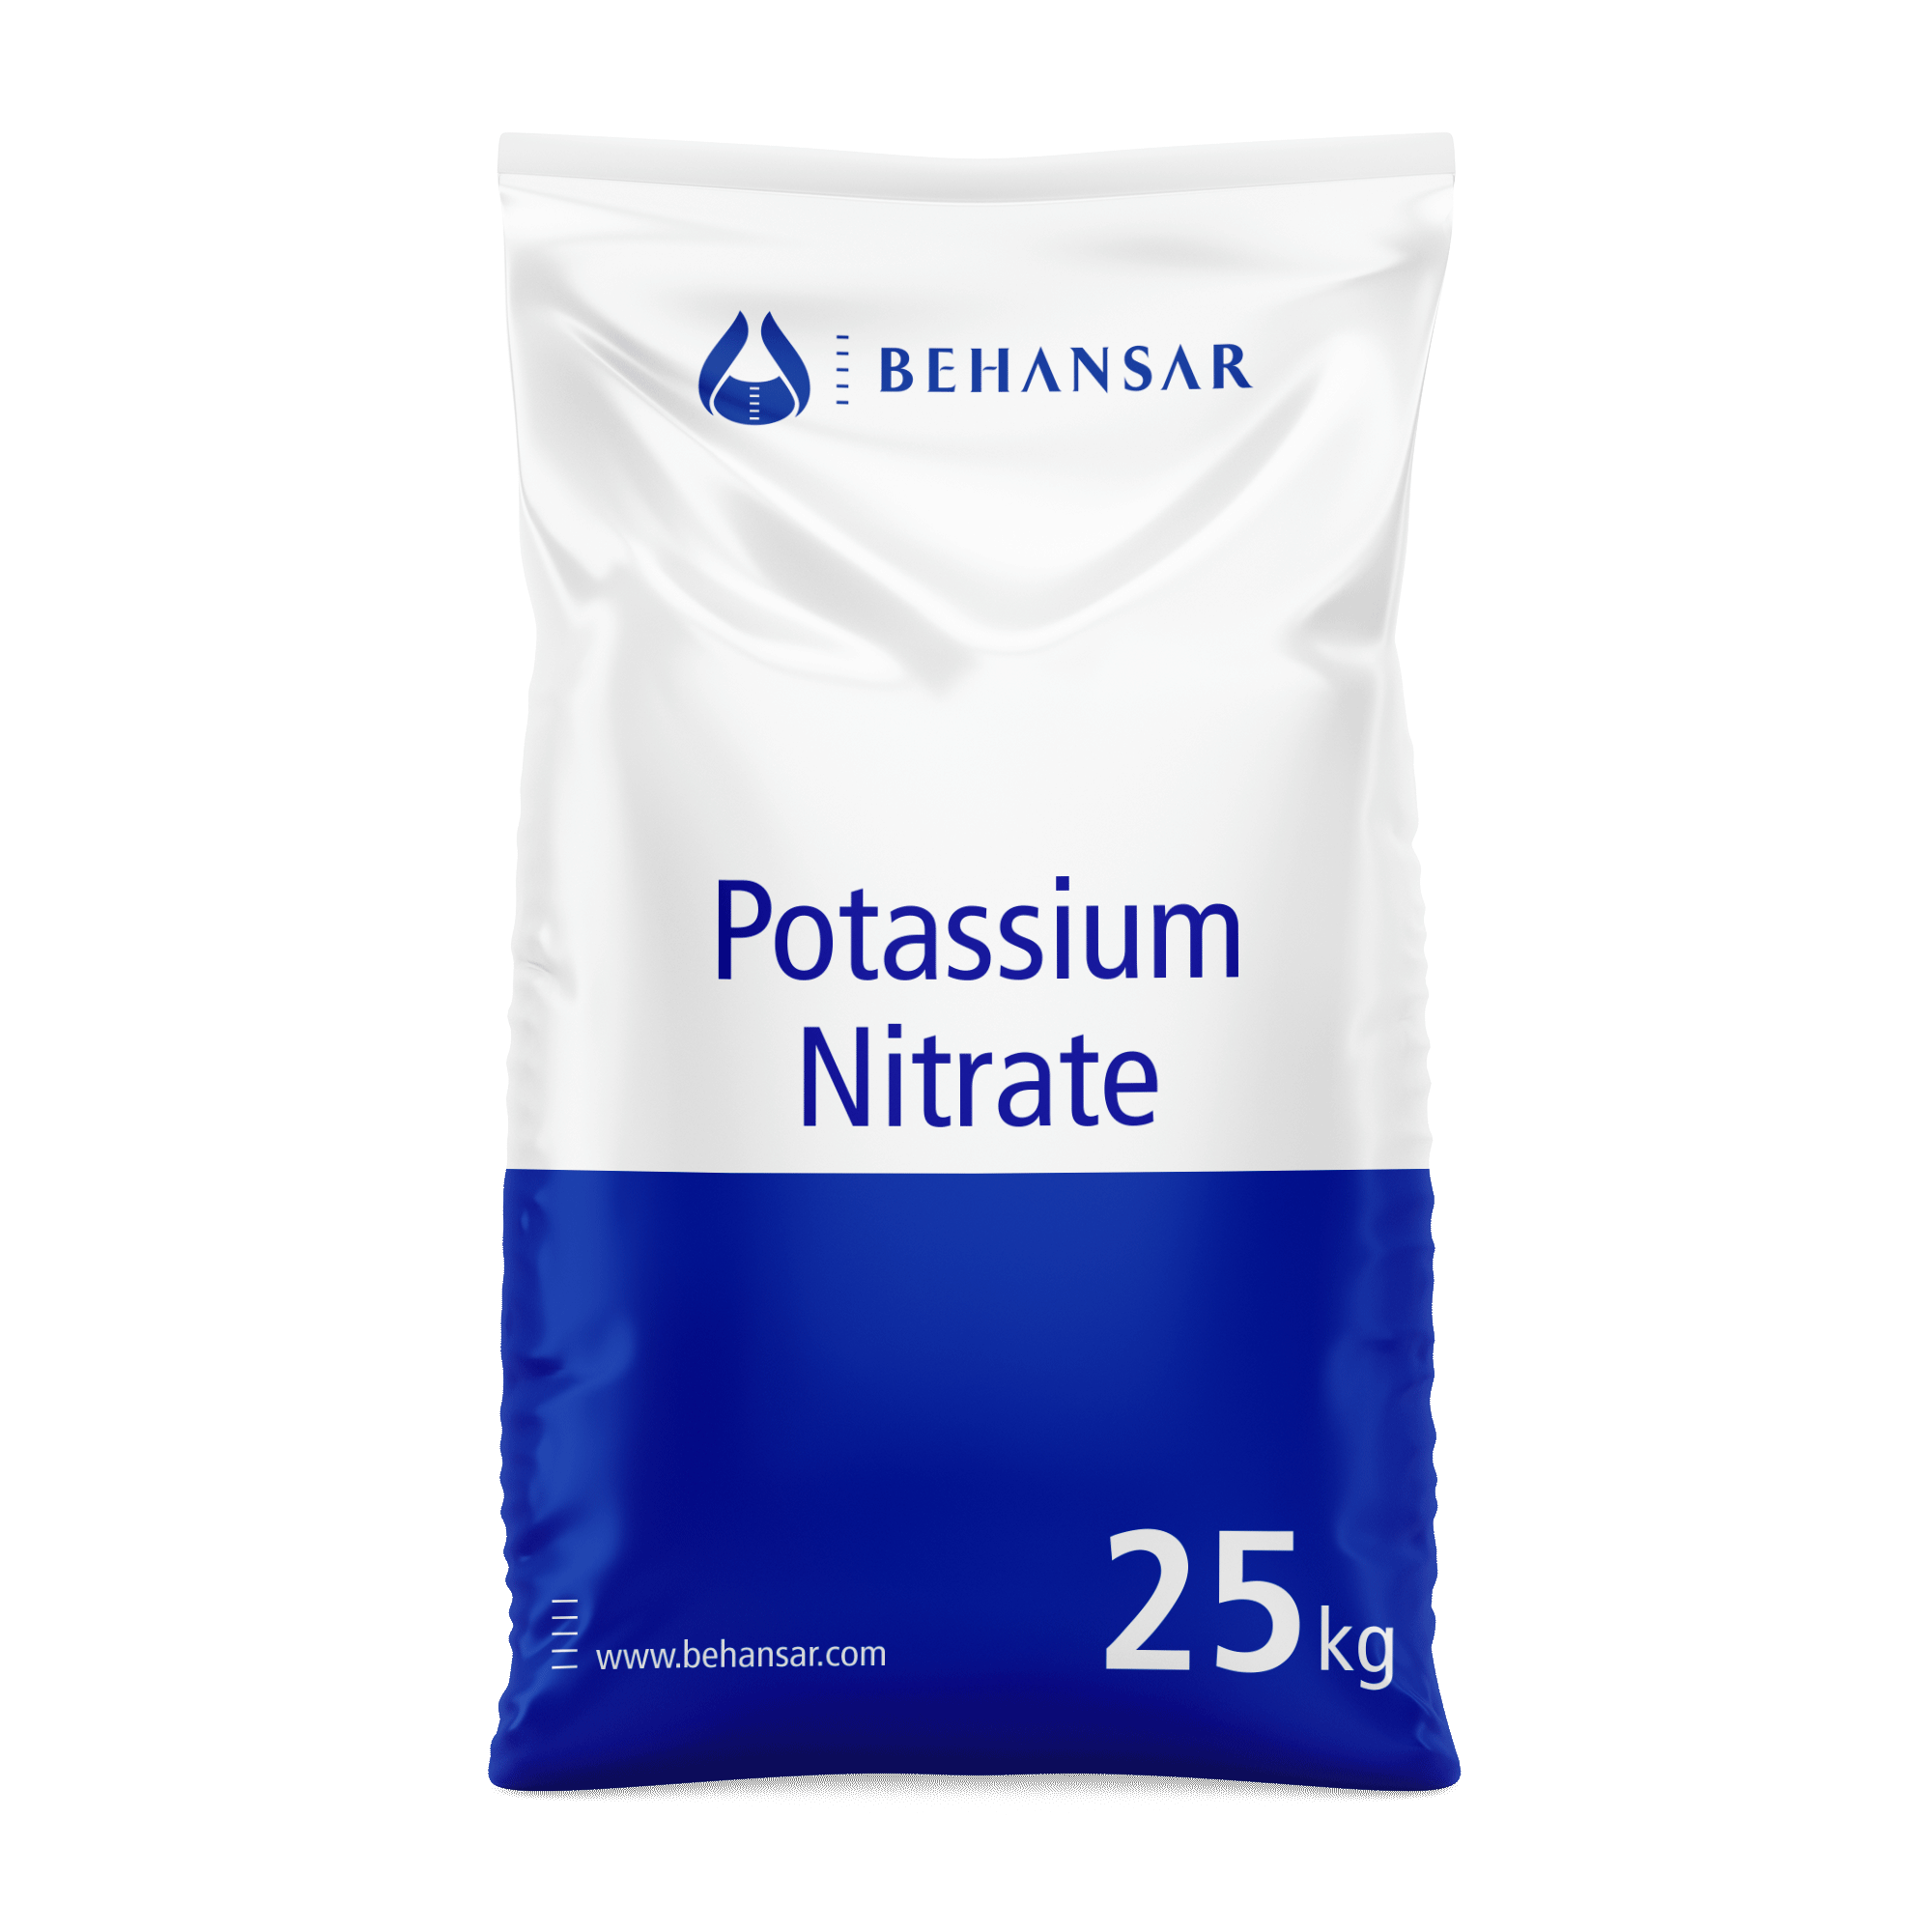 پتاسیم نیترات یکی از تولیدات شرکت بهانسار است